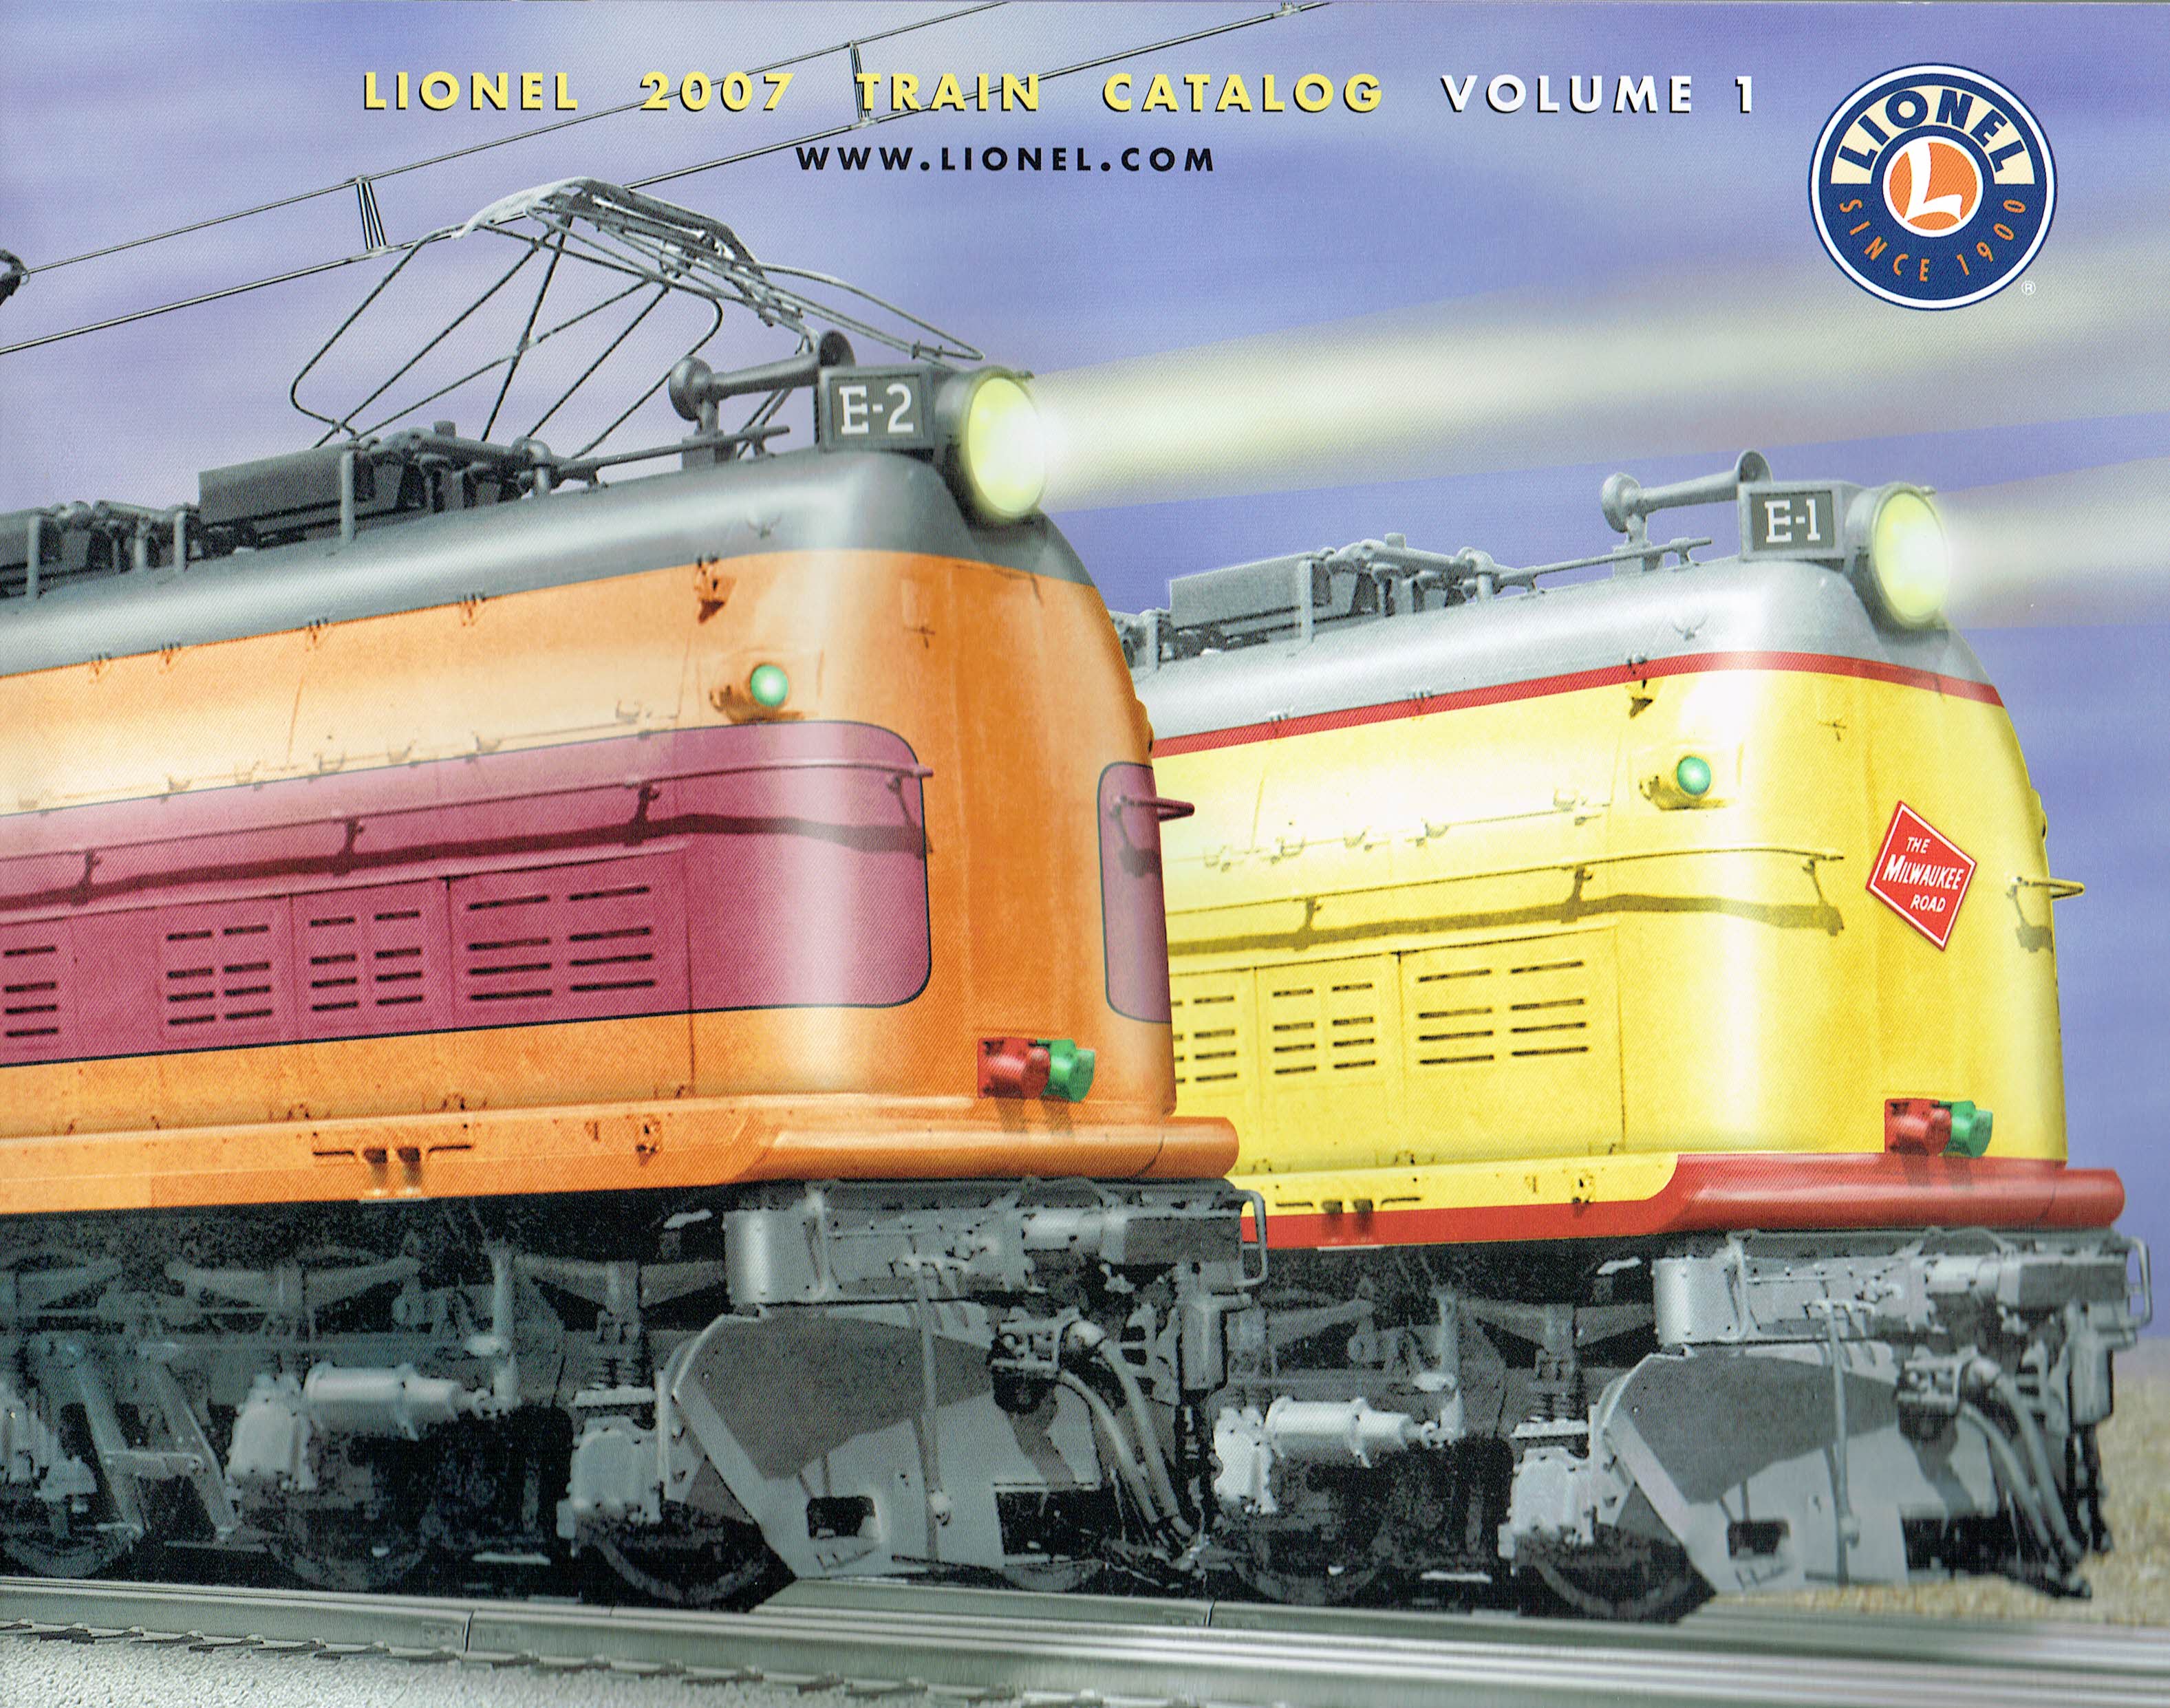 Lionel 2007 Train Catalog Volume 1 image